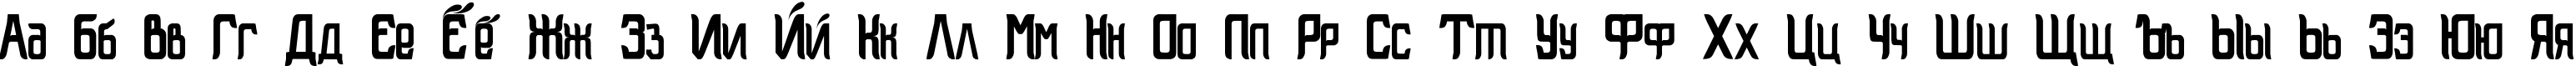 Пример написания русского алфавита шрифтом Bardelin